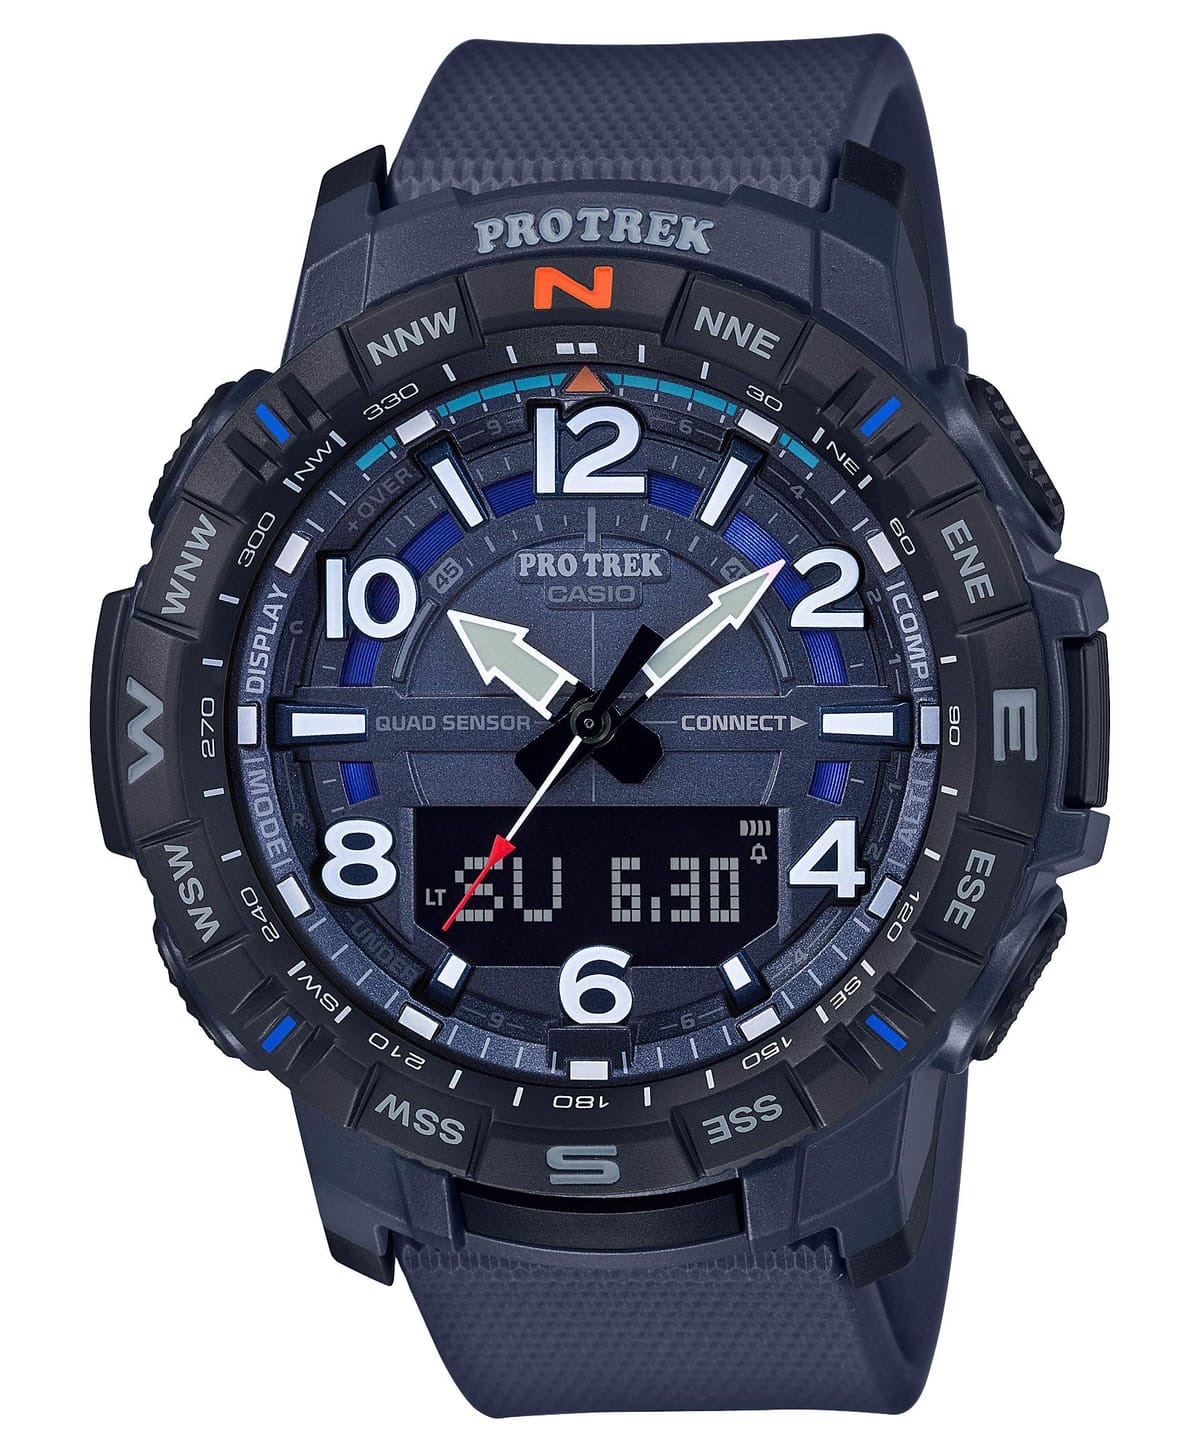 カシオ 腕時計 プロトレック【国内正規品】 クライマーライン スマートフォンリンク PRT-B50-2JF メンズ